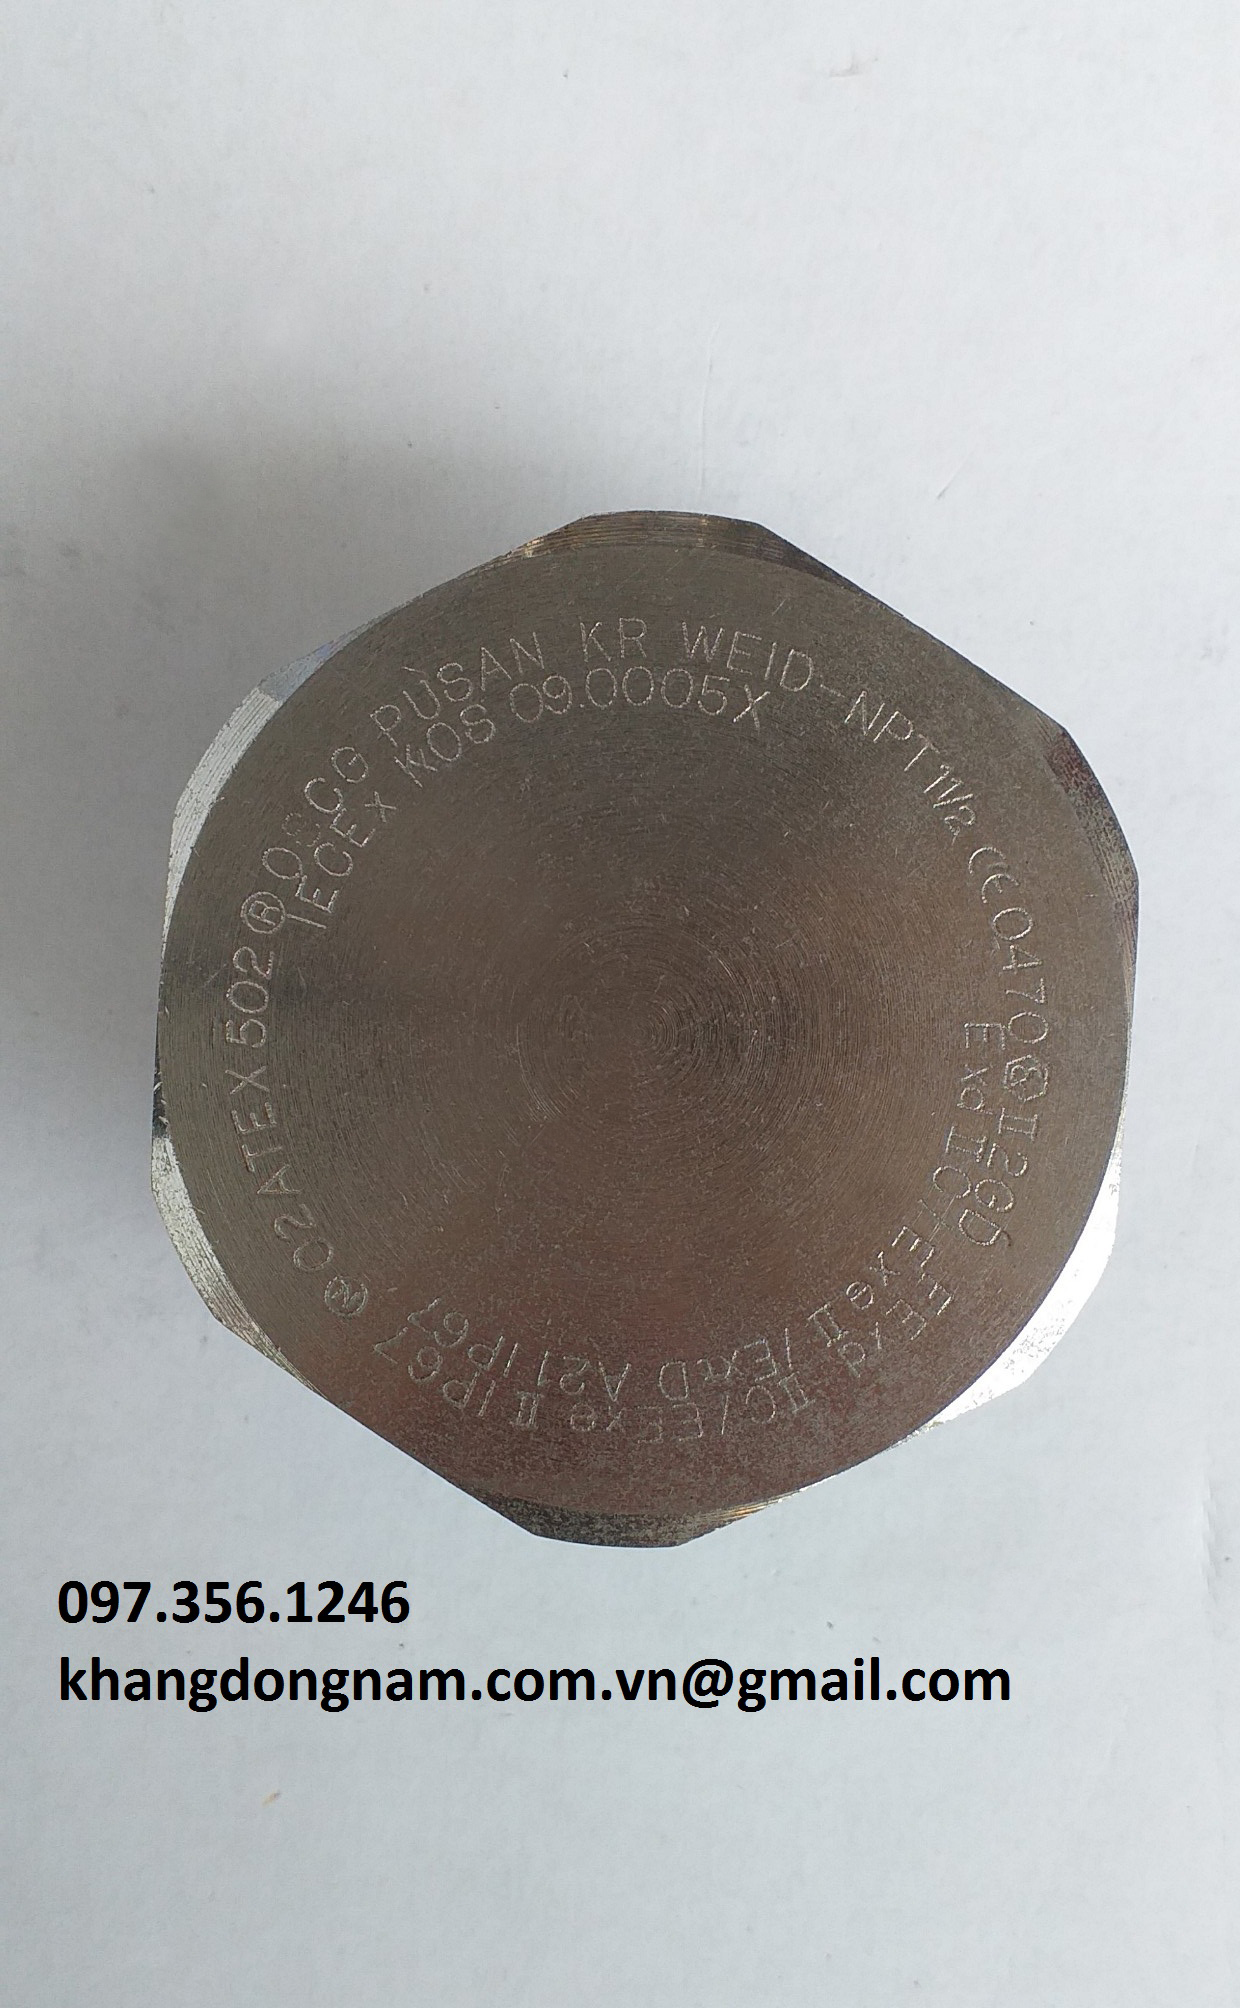 Nút bịt chống cháy nổ OSCG WEID - NPT 1 1/2 (1)